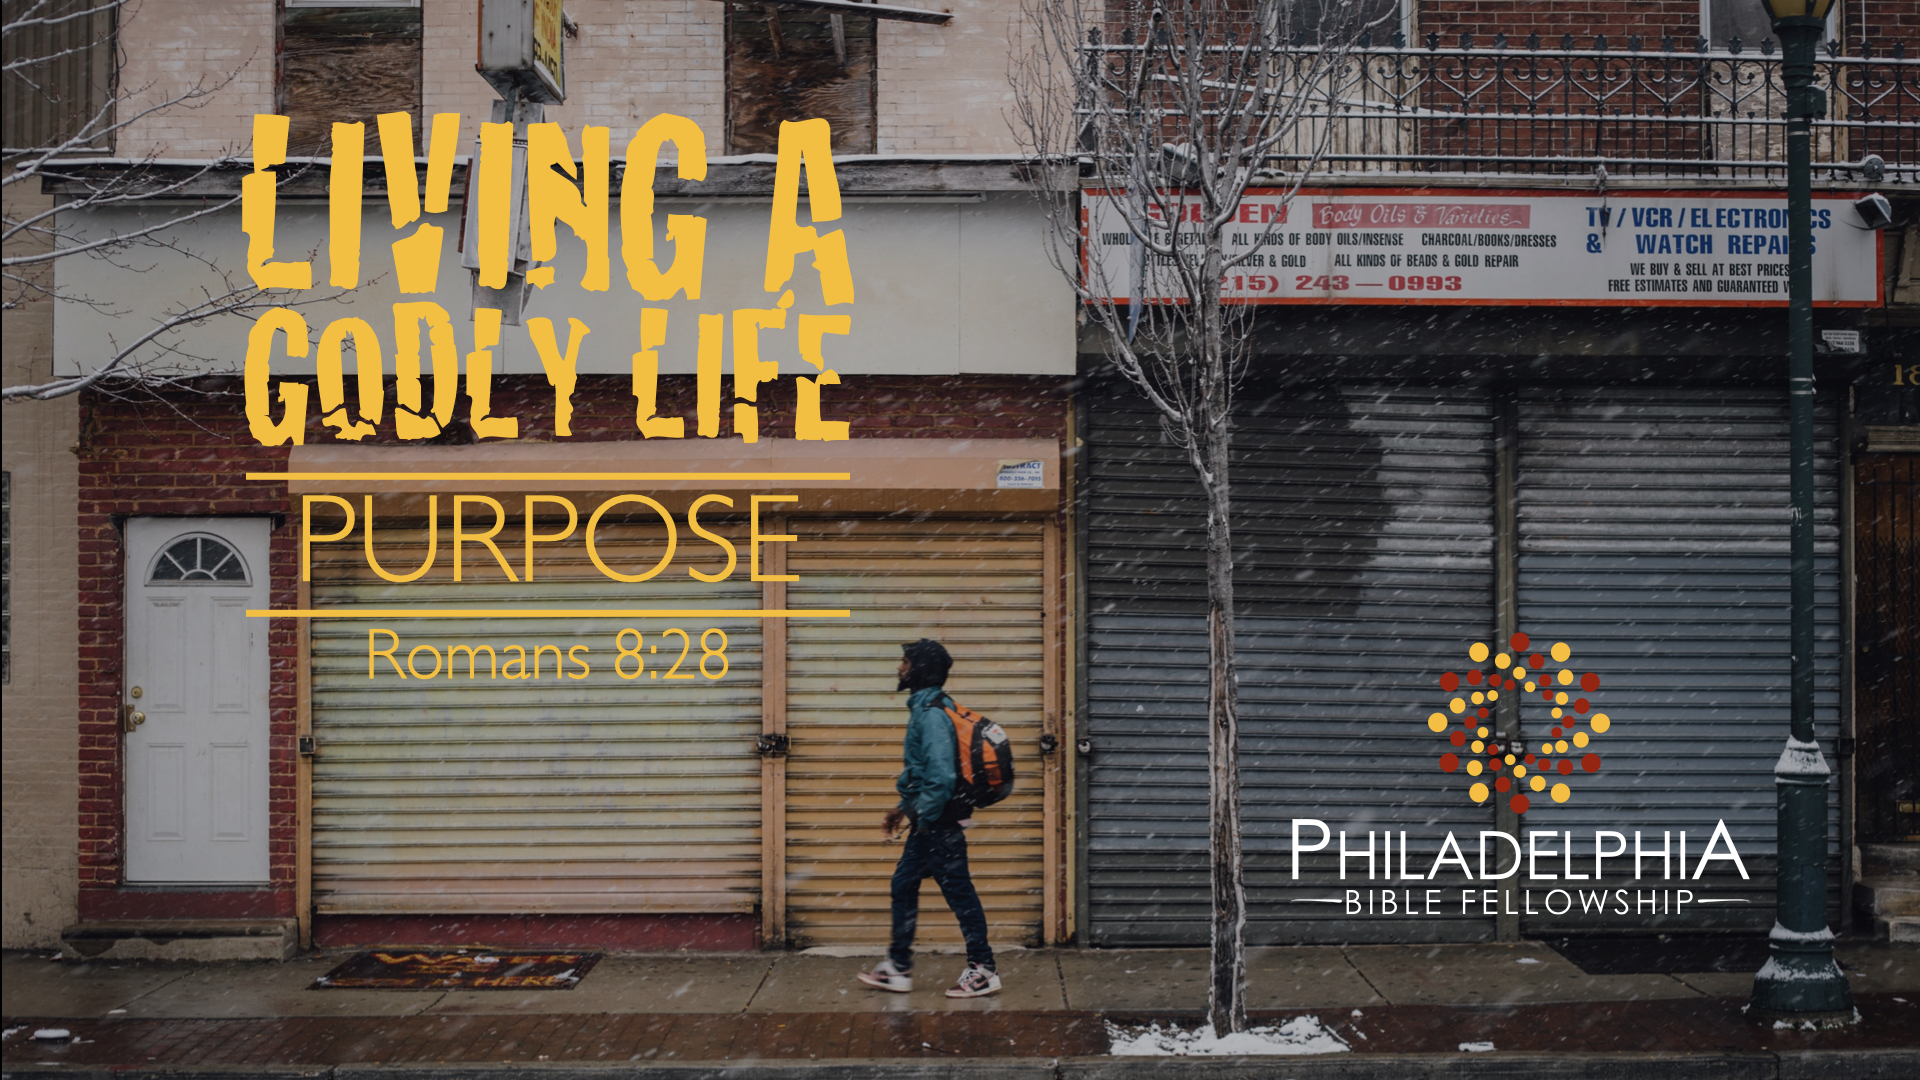 Purpose - Living a Godly Life